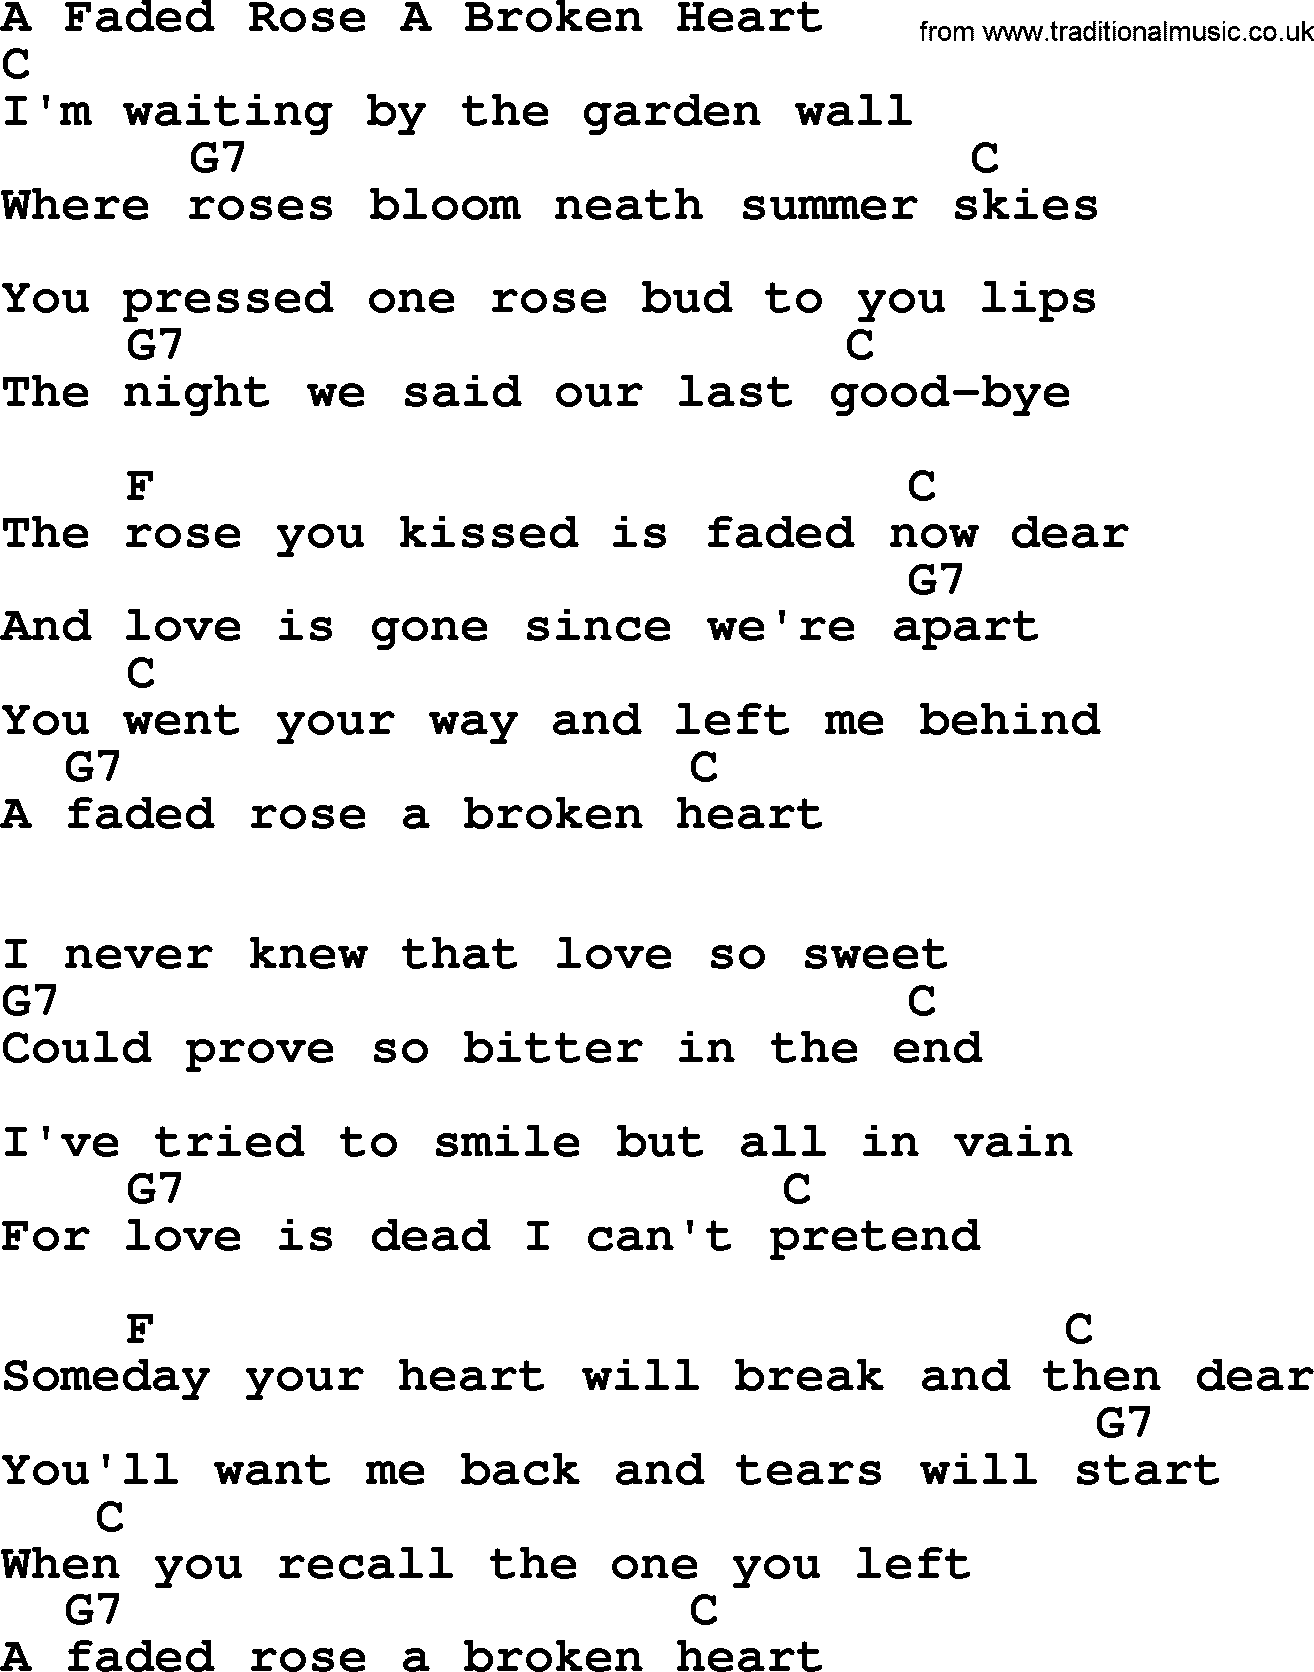 Bluegrass song: A Faded Rose A Broken Heart, lyrics and chords